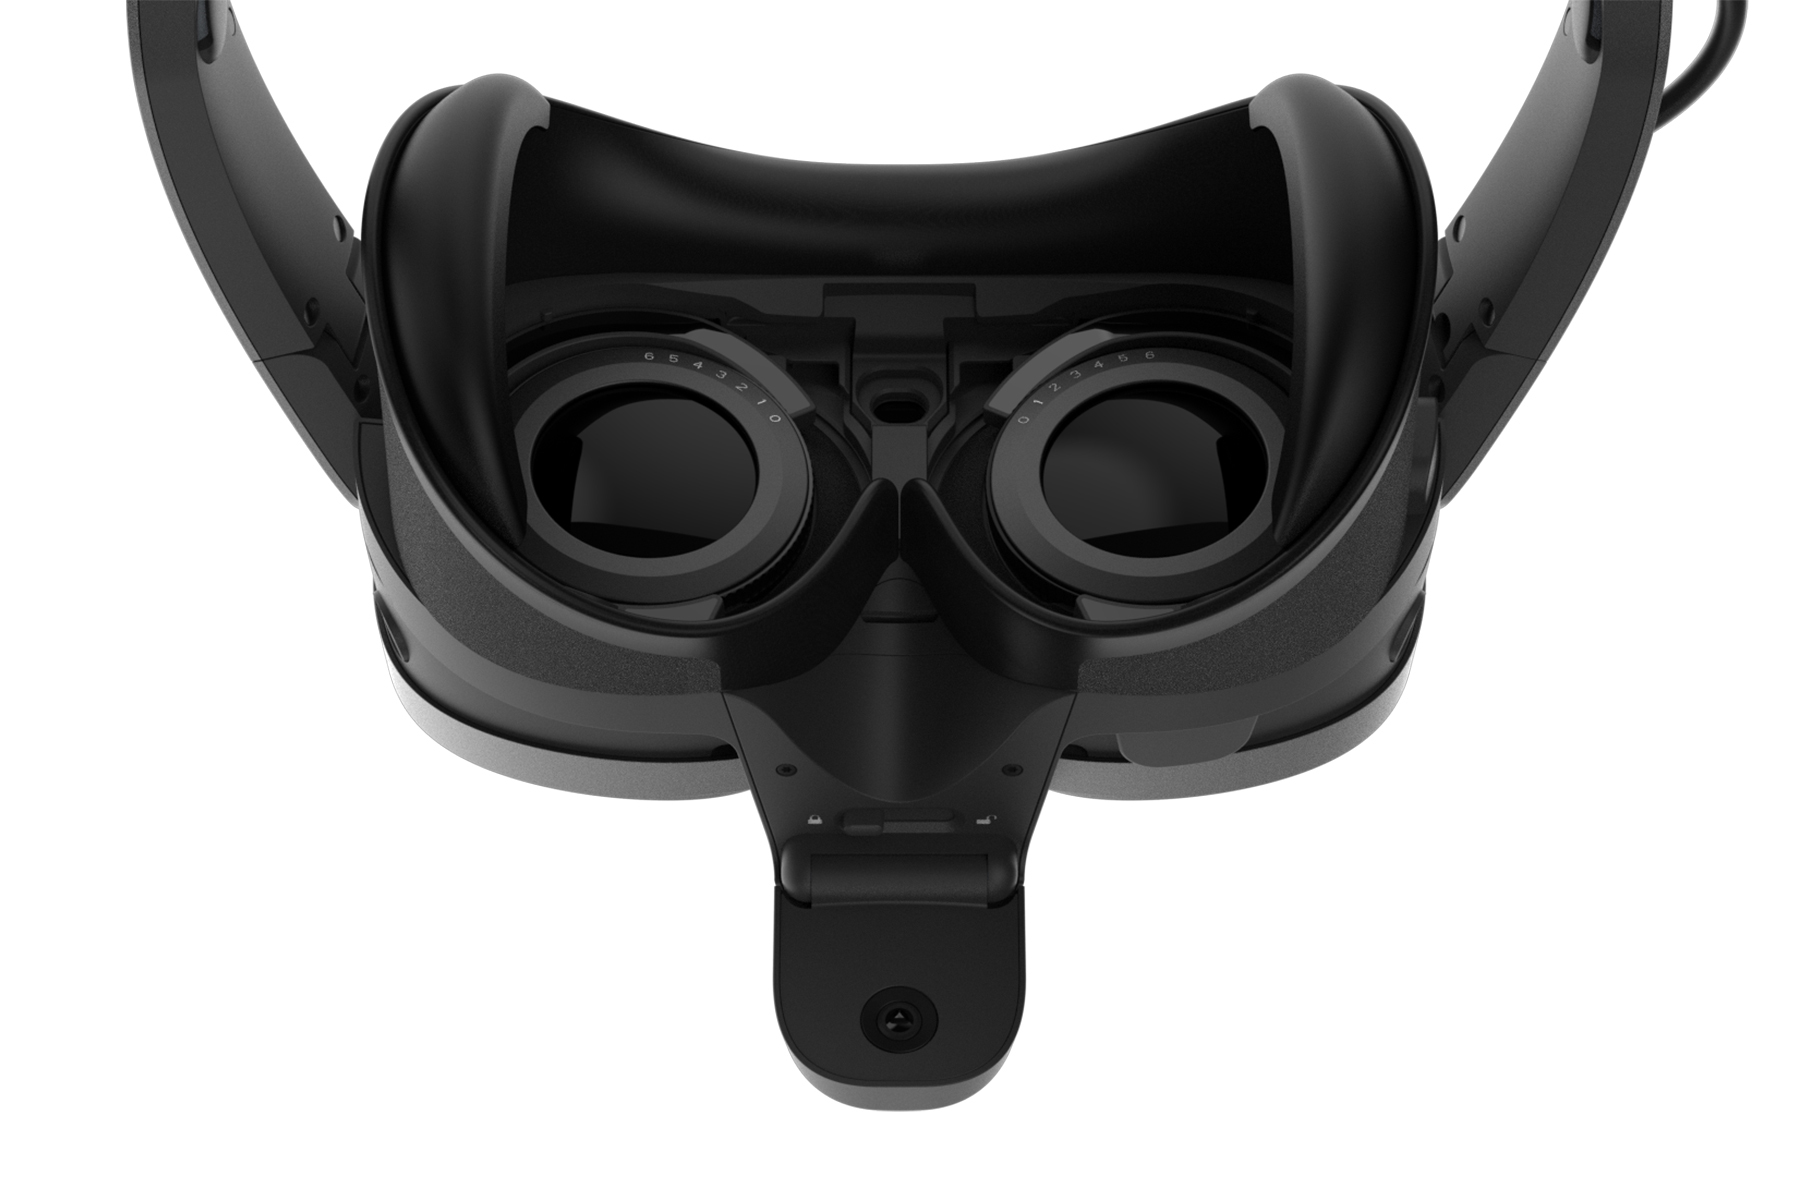 HTC VIVE Full Face Tracker for VIVE XR Elite